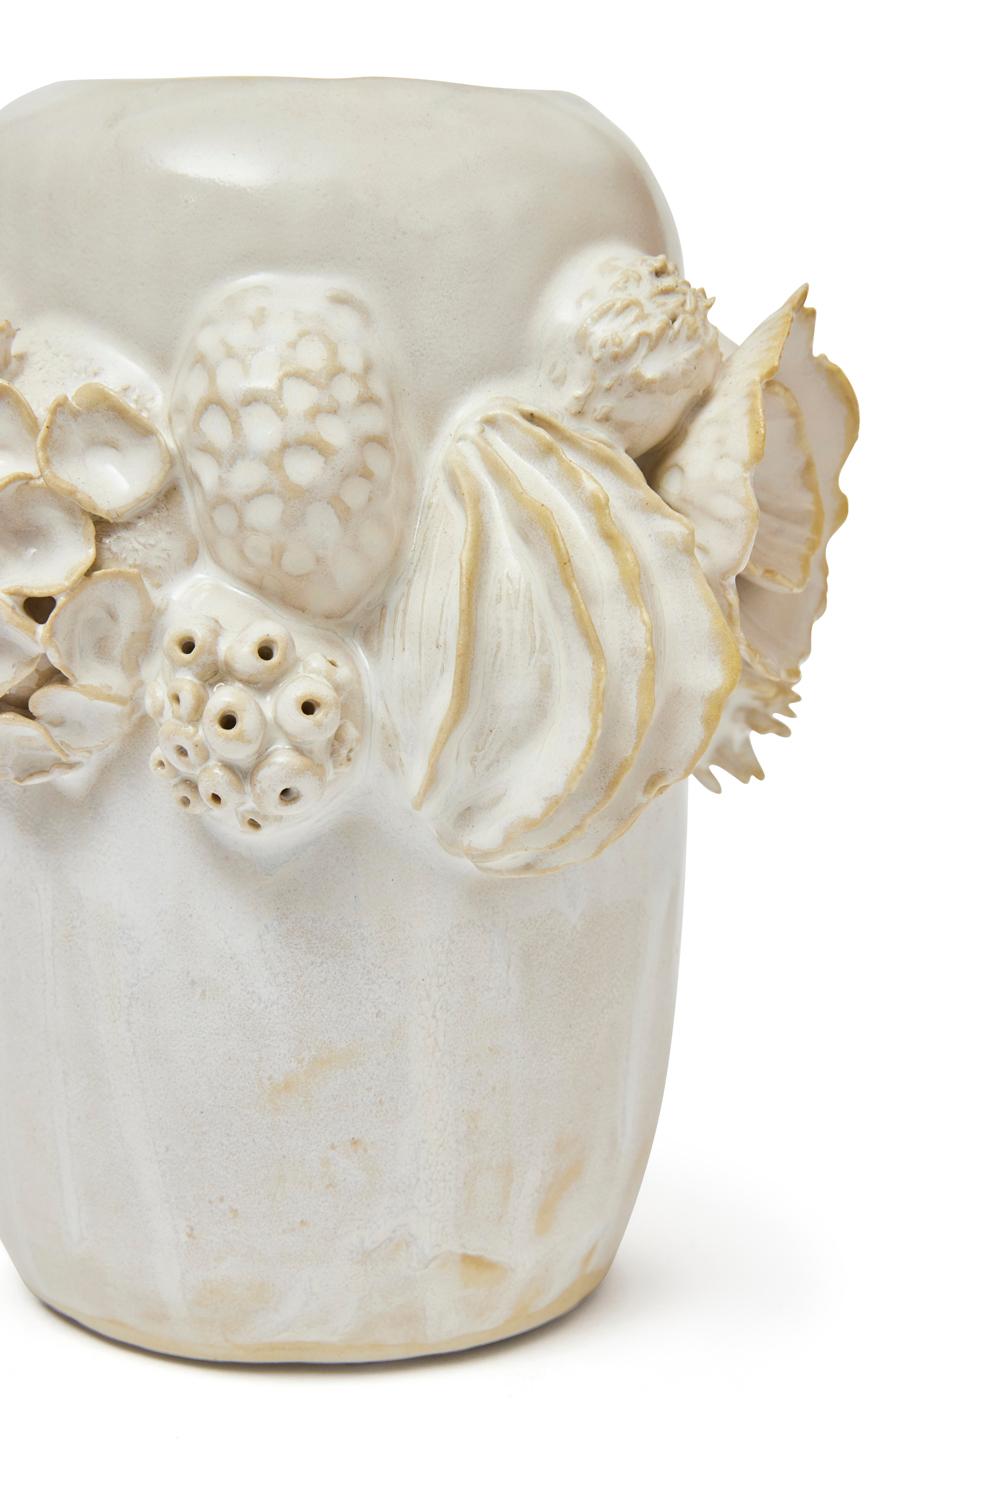 Botanica Vessel in Glazed Ceramic by Trish DeMasi In New Condition For Sale In Philadelphia, PA